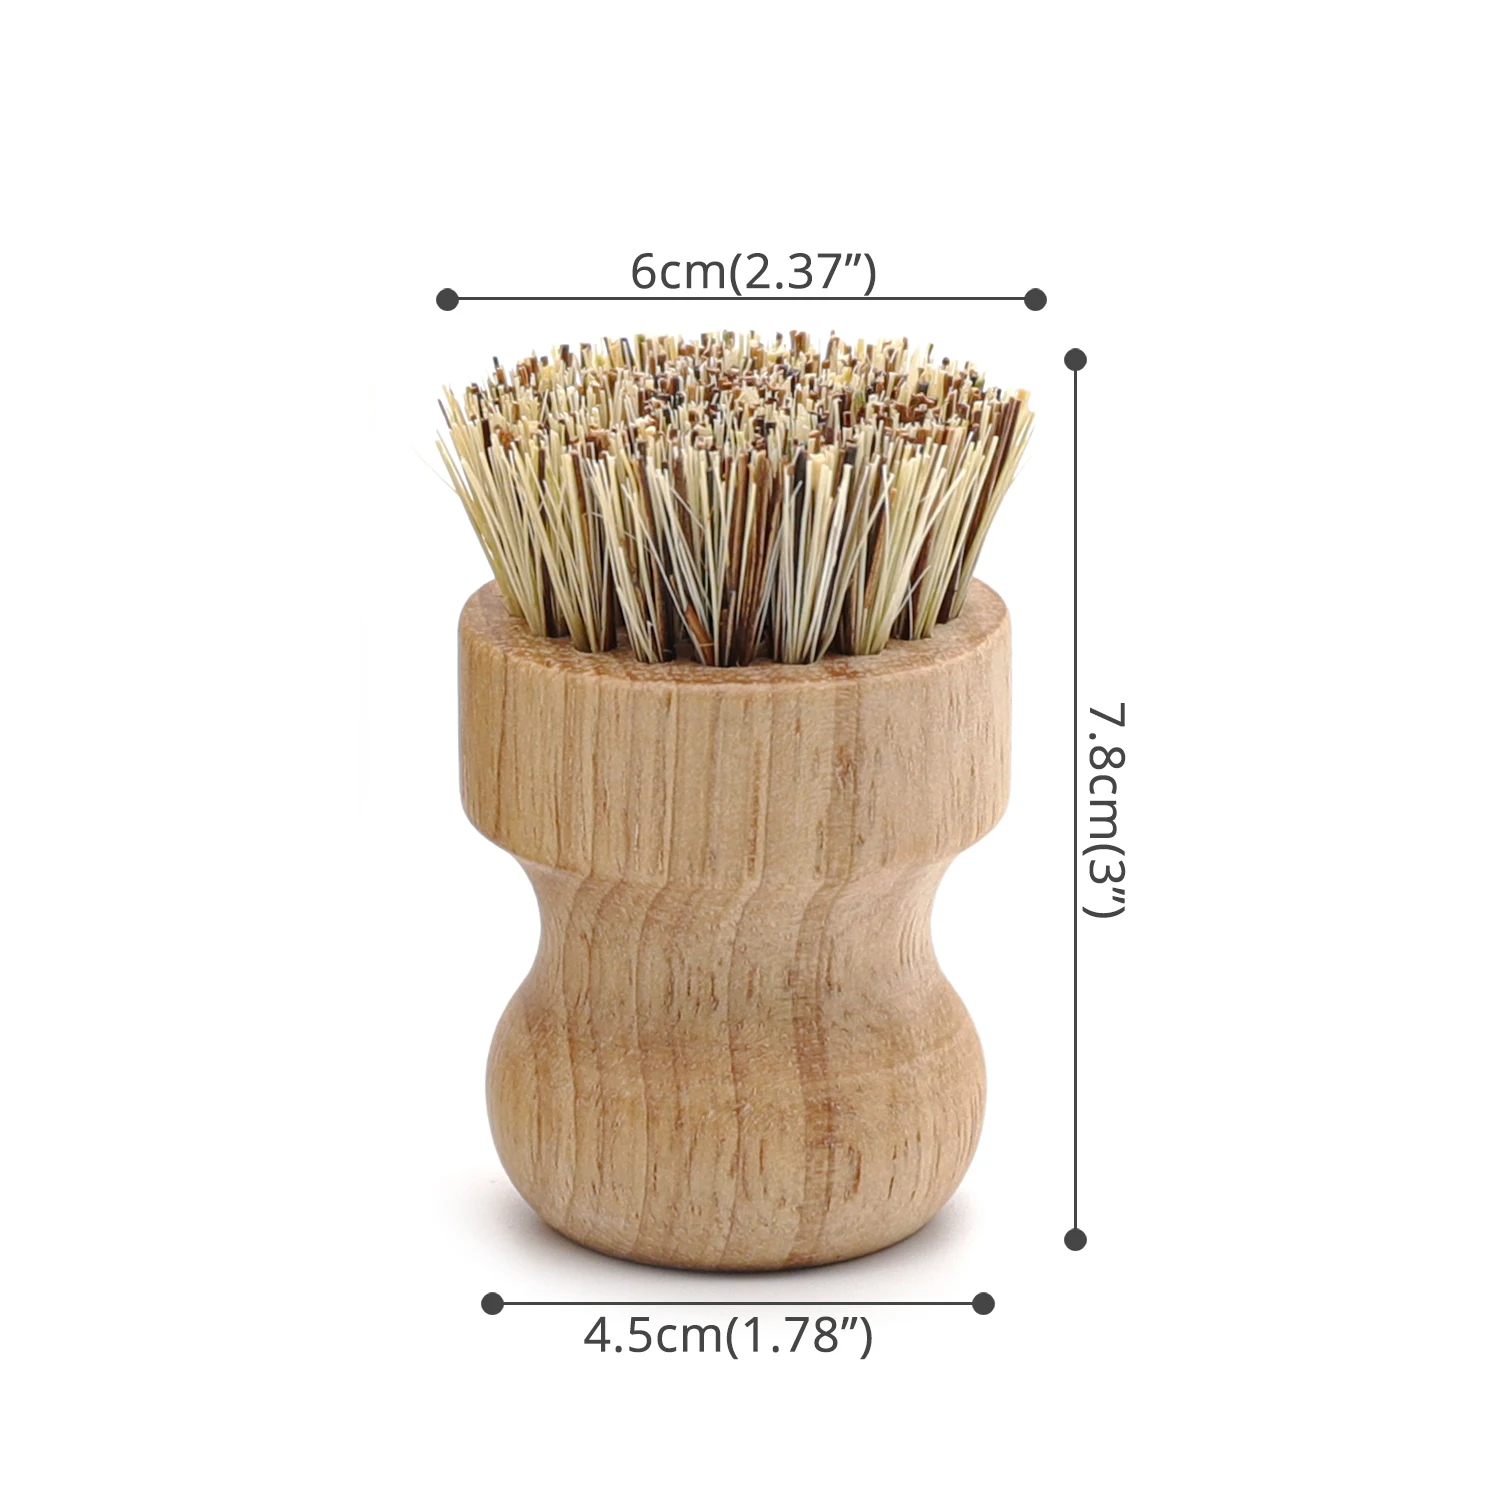 Cepillos de Bambú Fregar,DBAILY 3Pcs Cepillos para Fregar Platos de Bambú Redondo para Sartén de Hierro Fundido Fregadero de Cocina Baño Limpieza Doméstica 